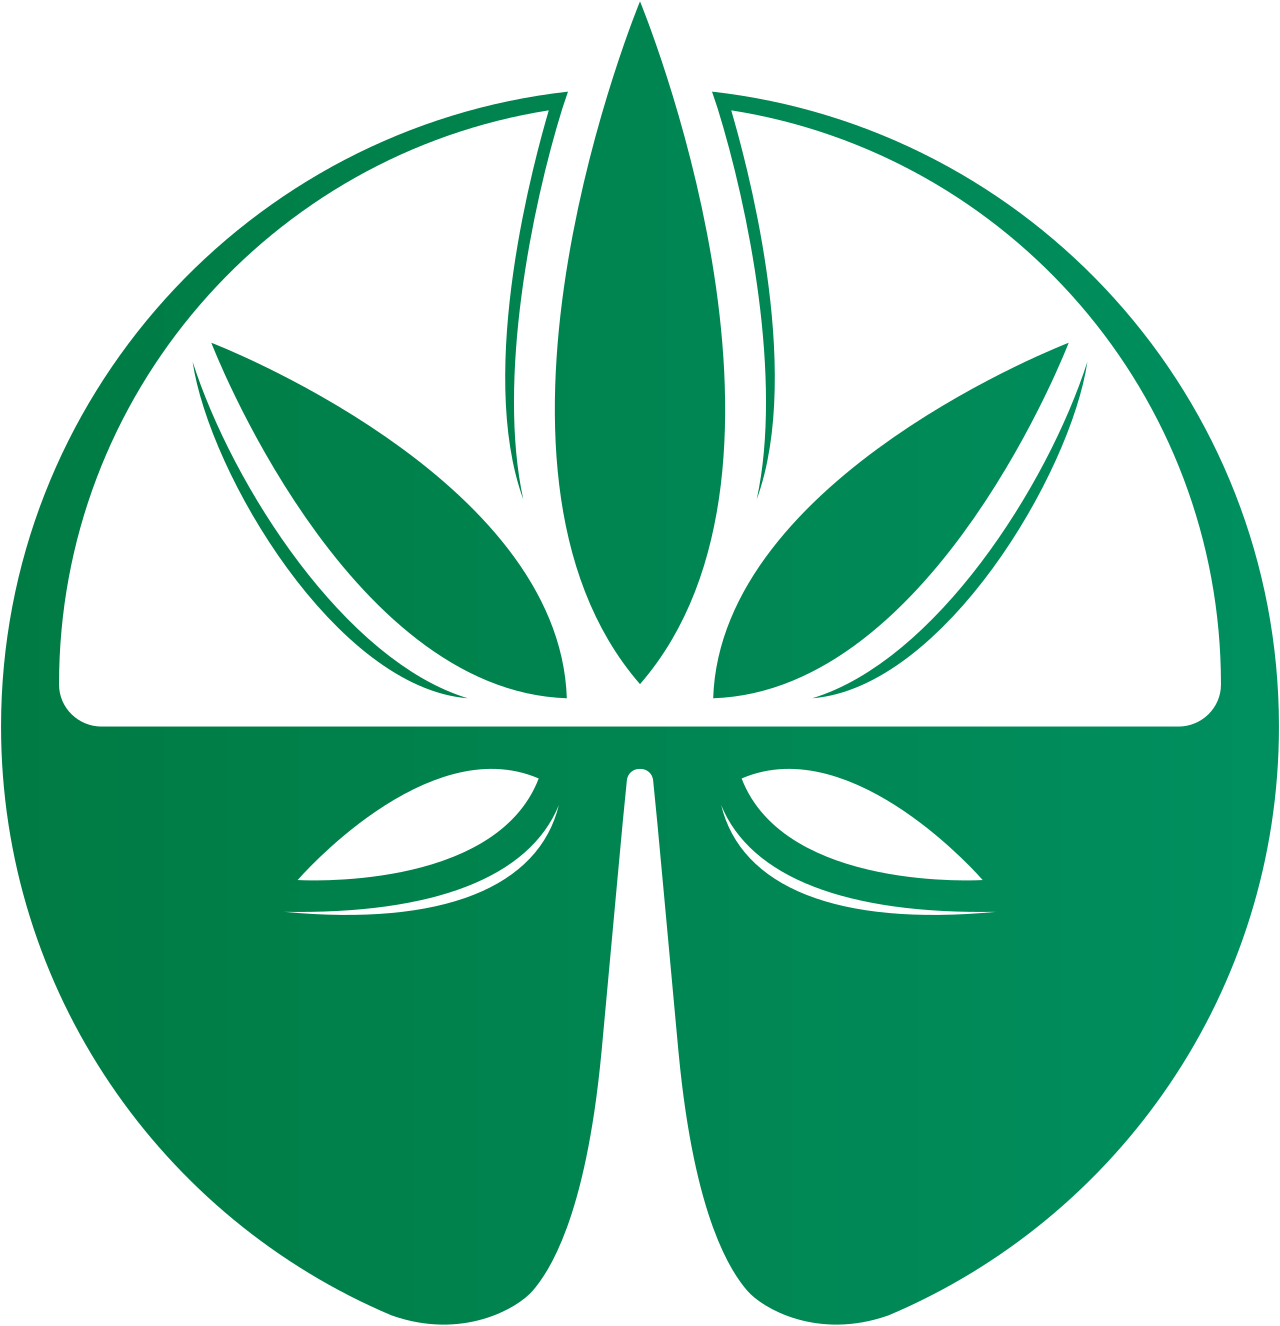 presc brasil's logo